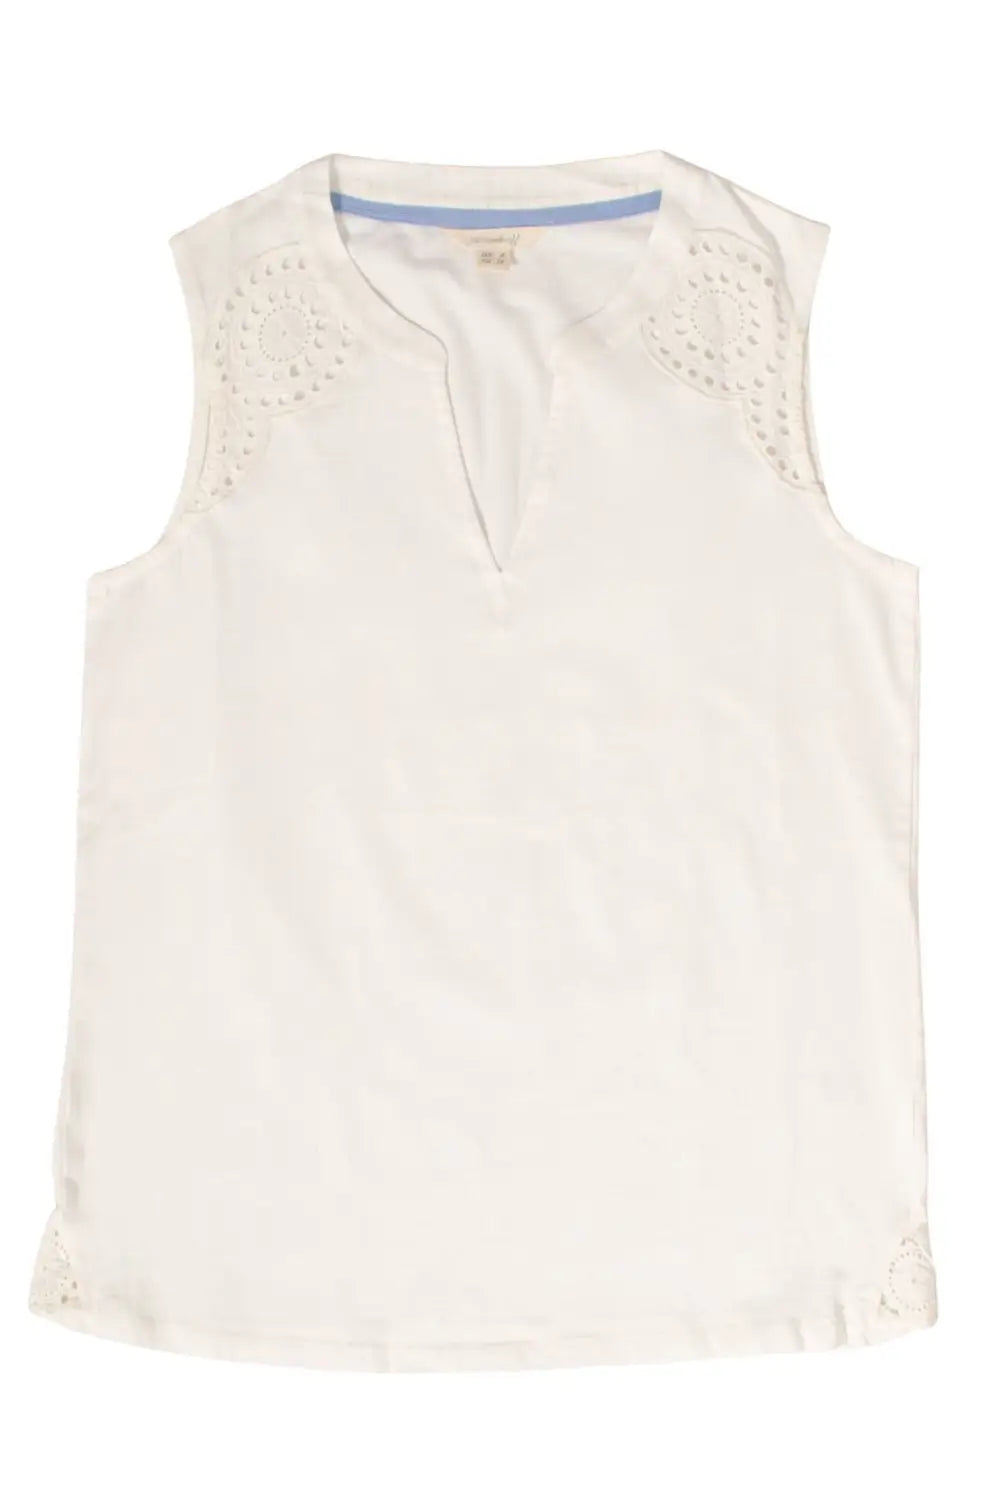 White Stuff Embroidered Cotton Vest Top